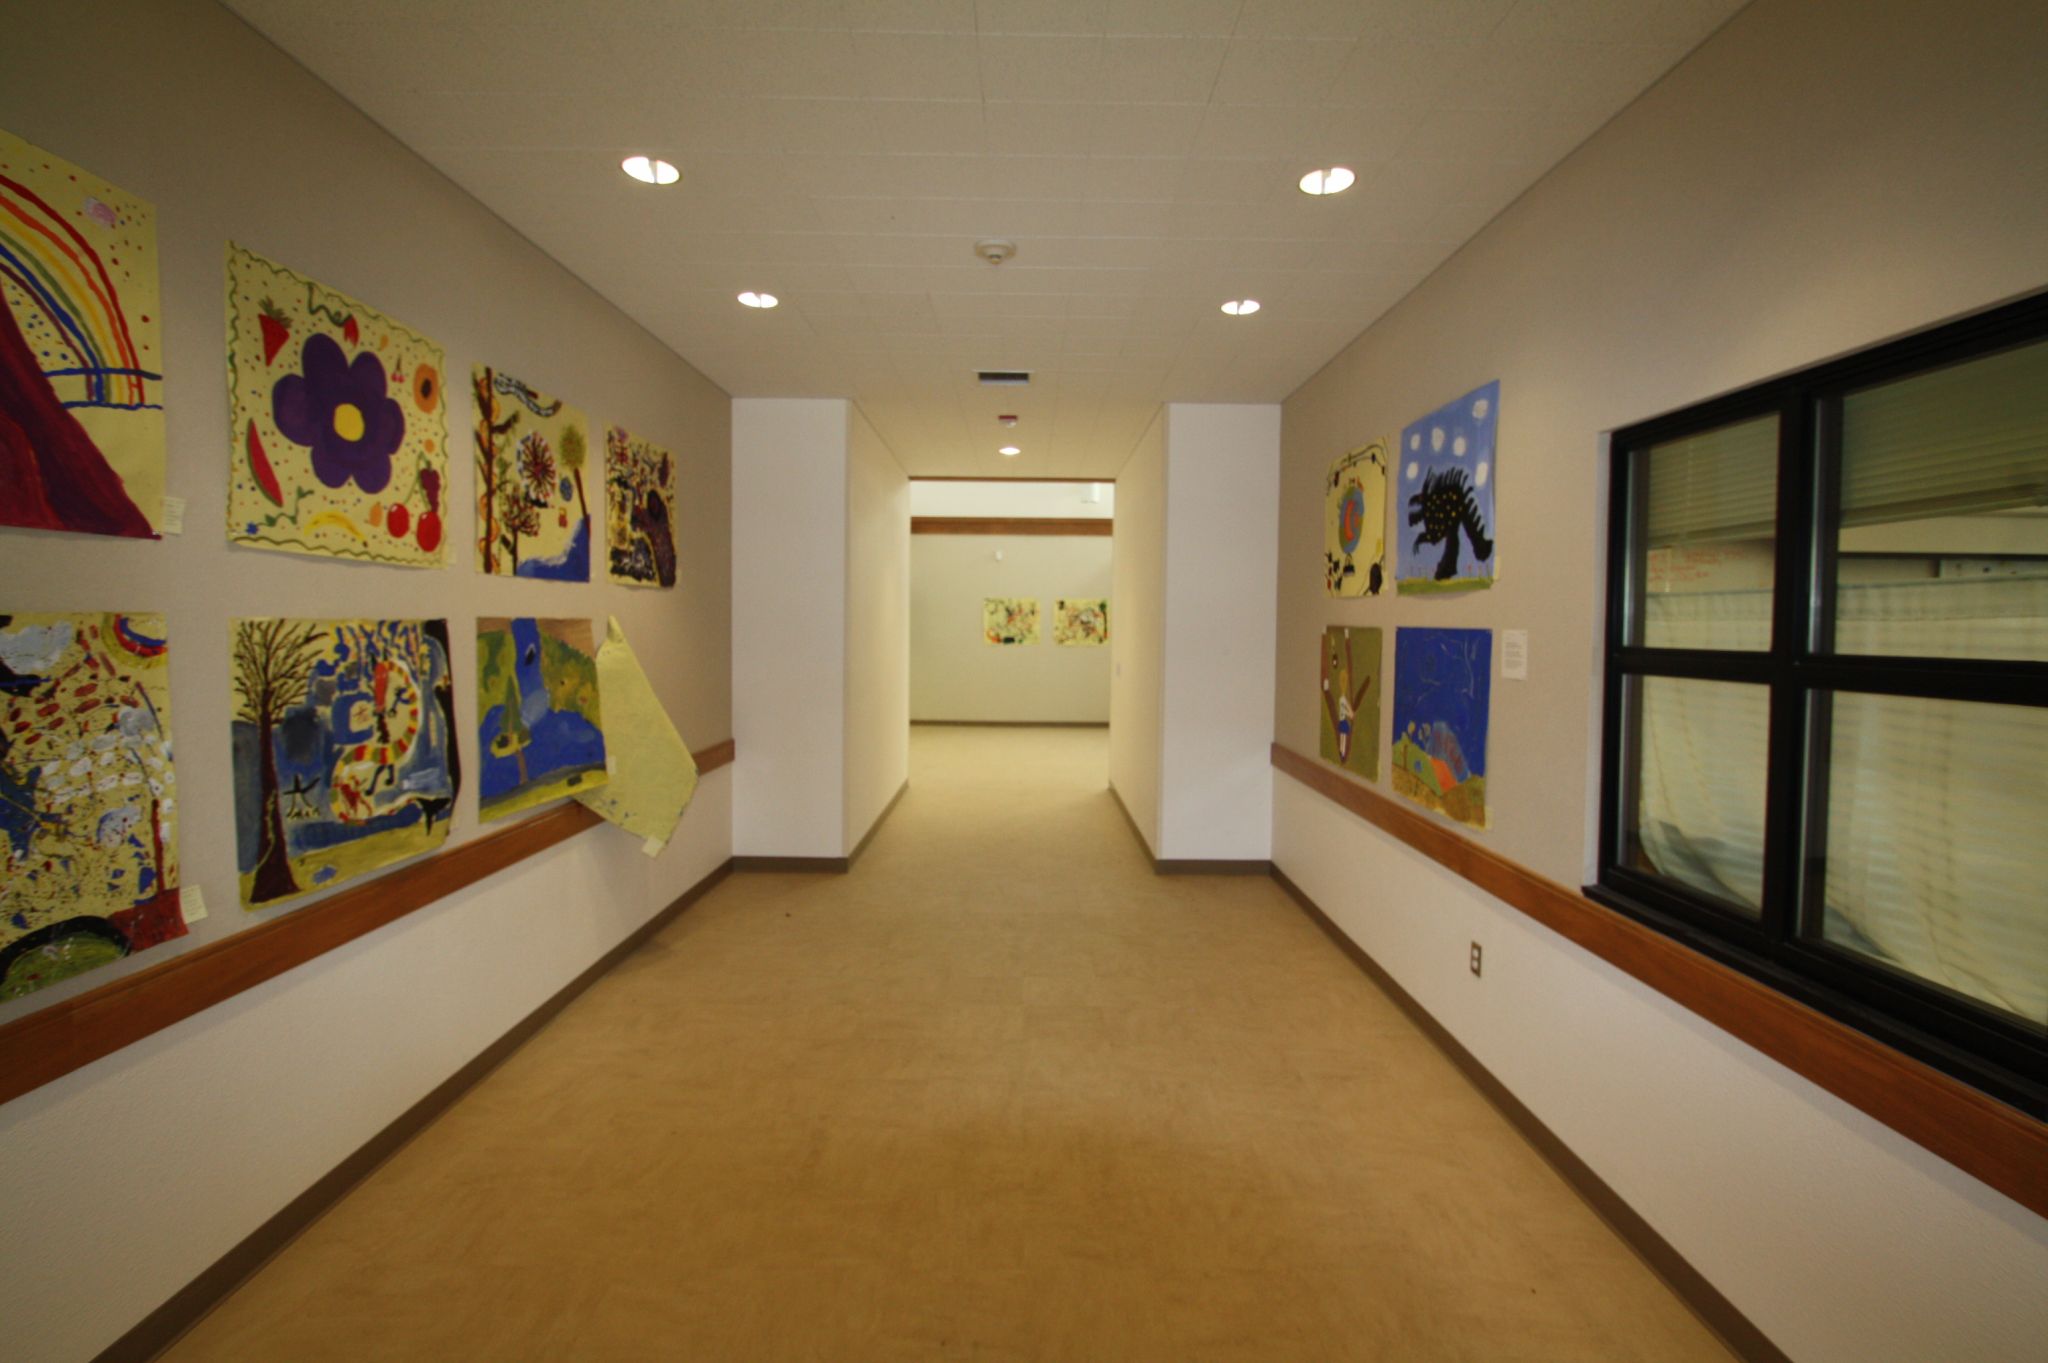 Interior Hallway of Mendocino K-8 School Campus